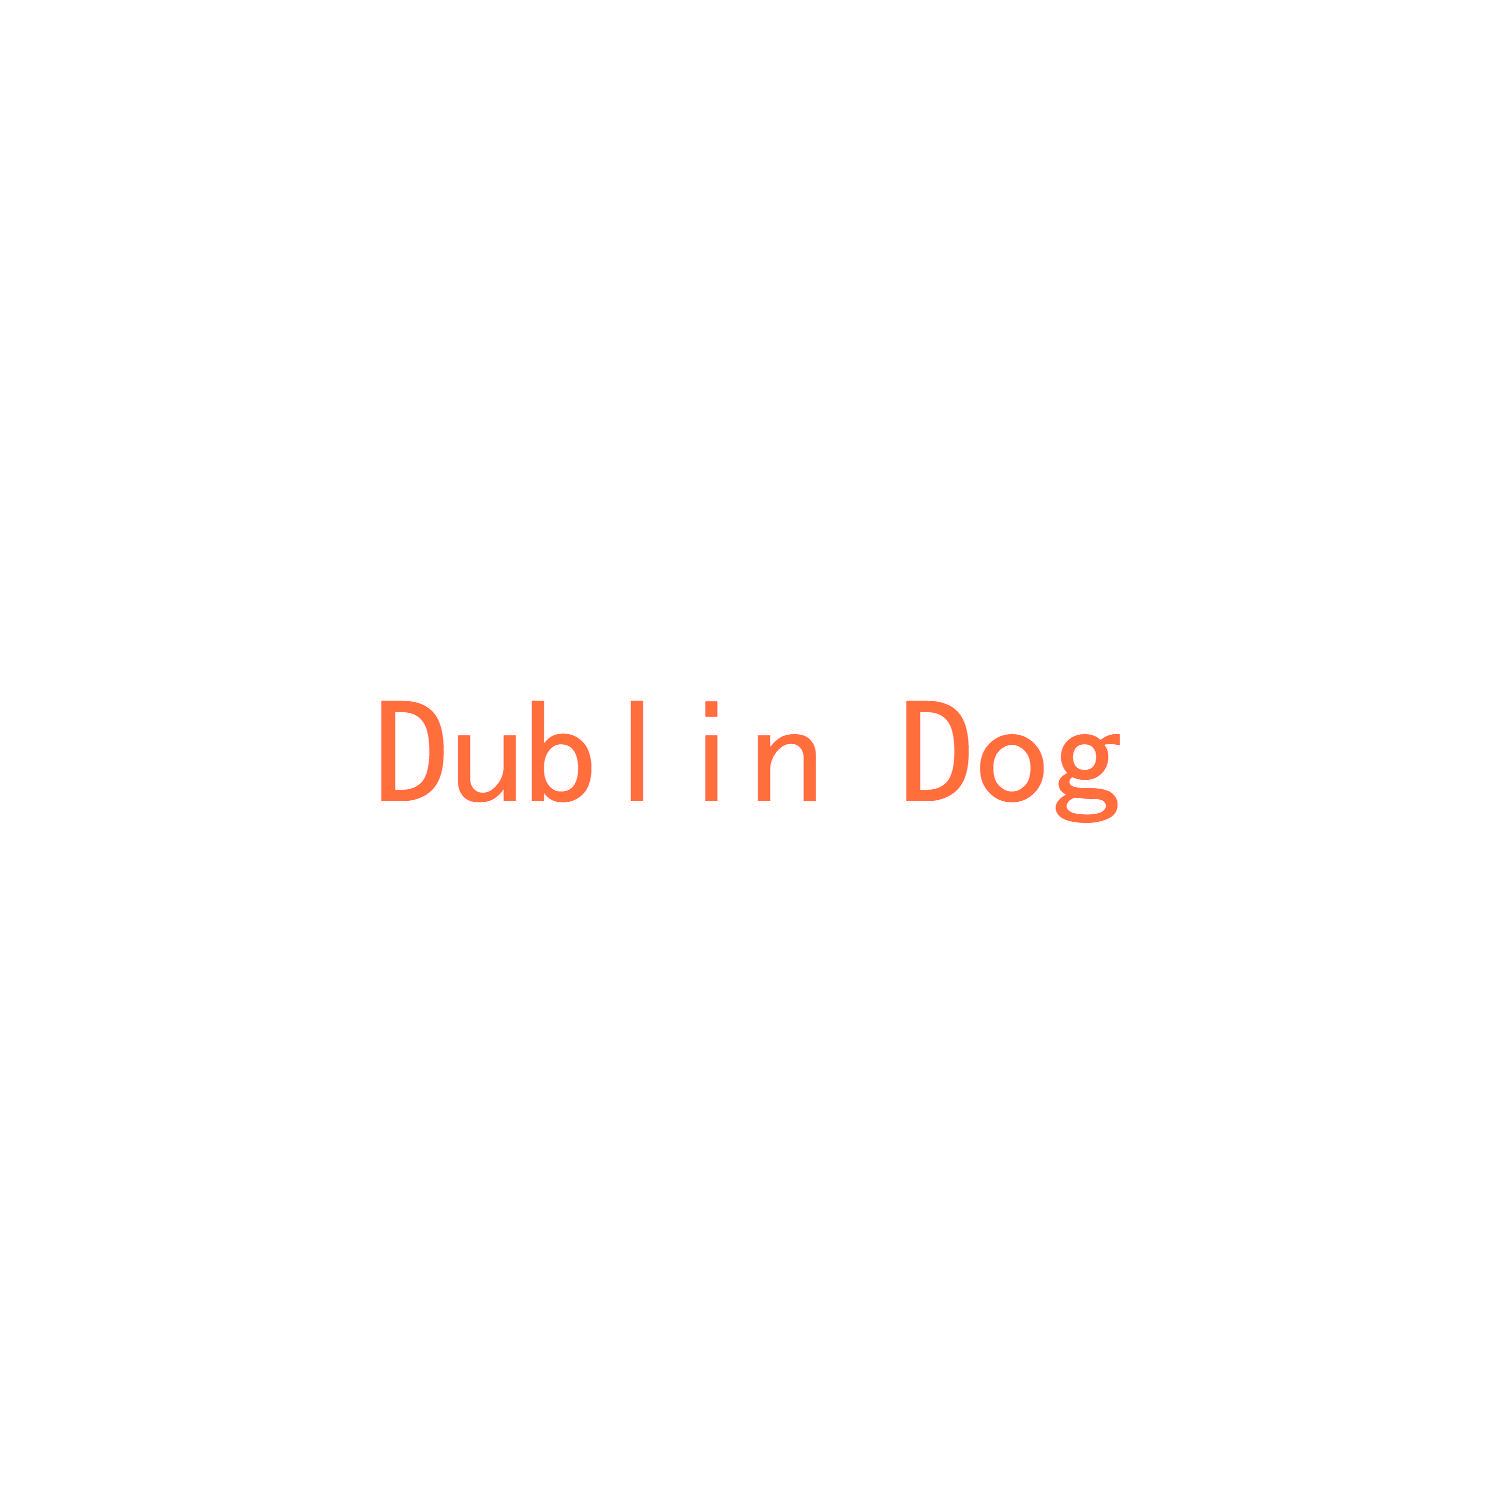 DUBLIN DOG